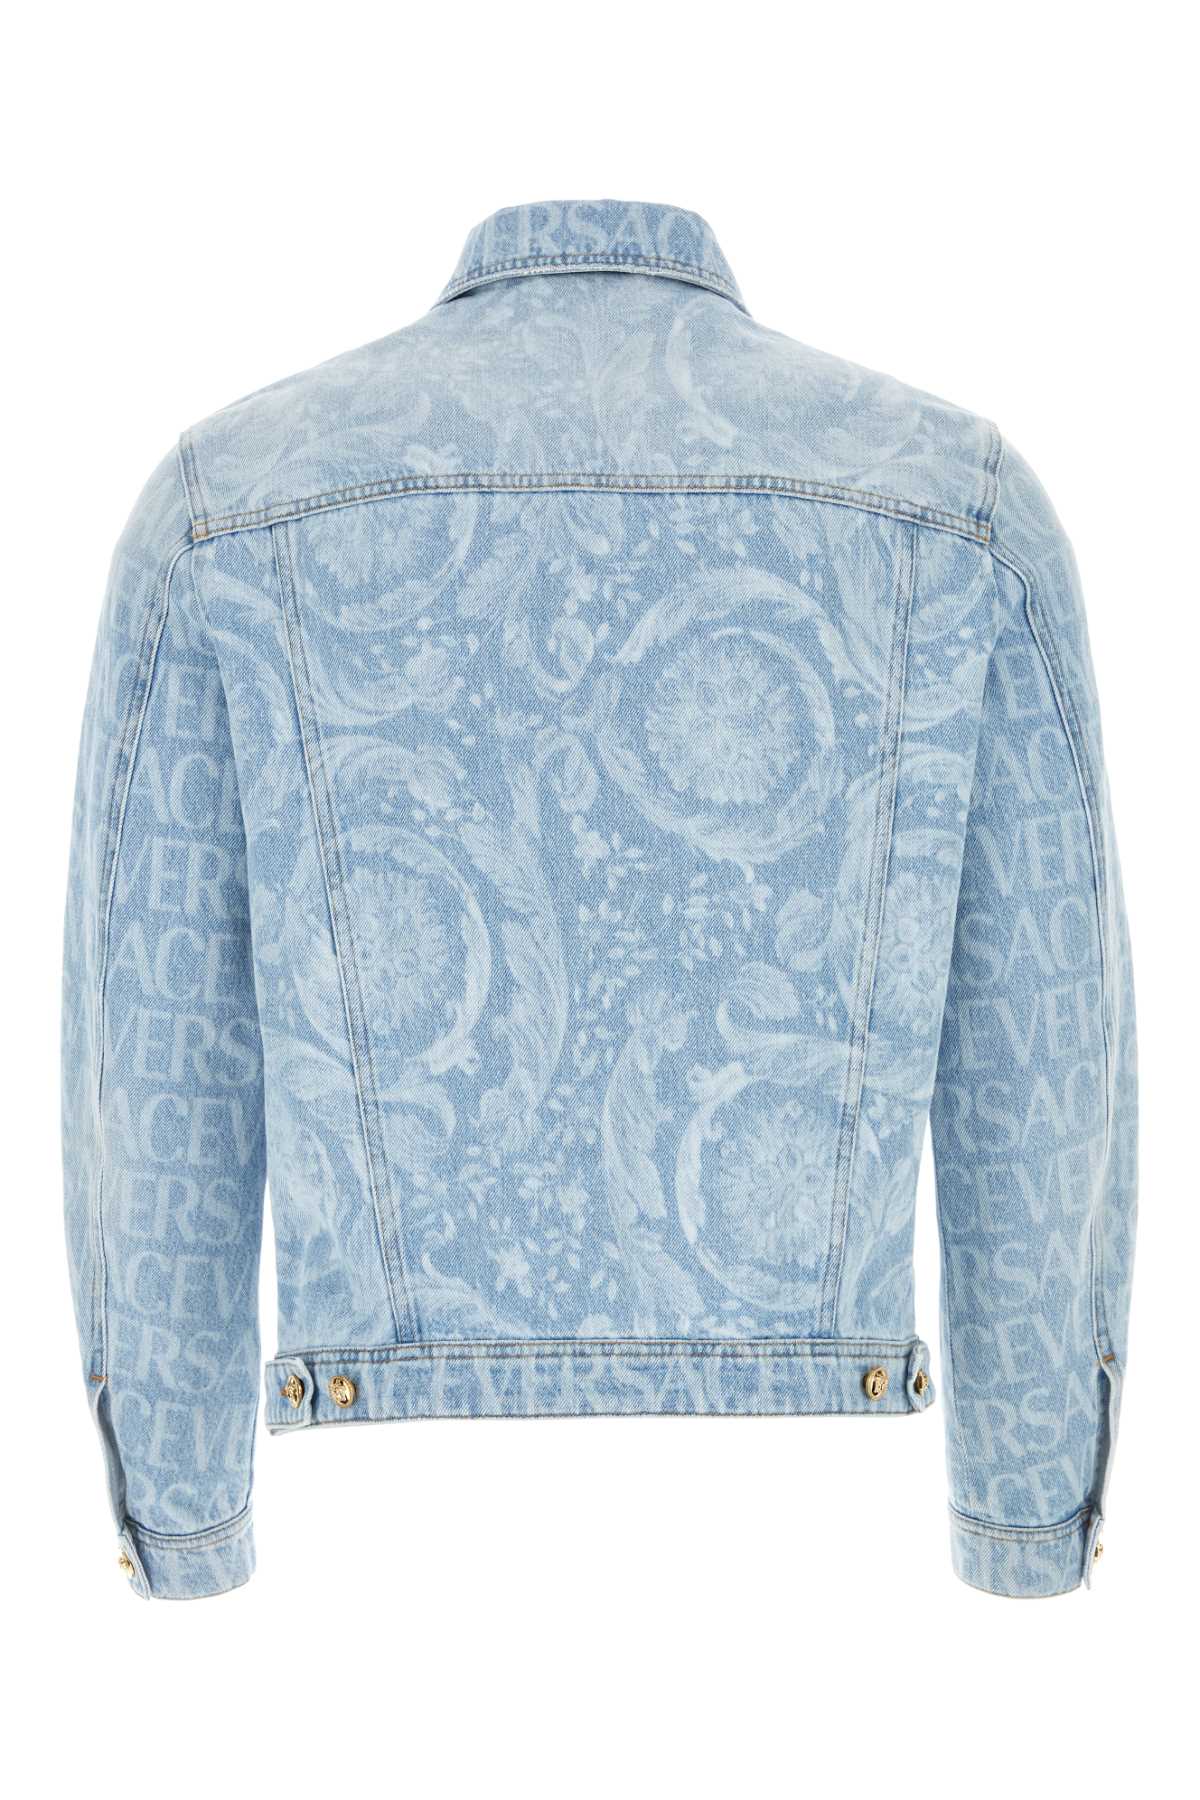 Versace Printed Denim Jacket In Azzurro